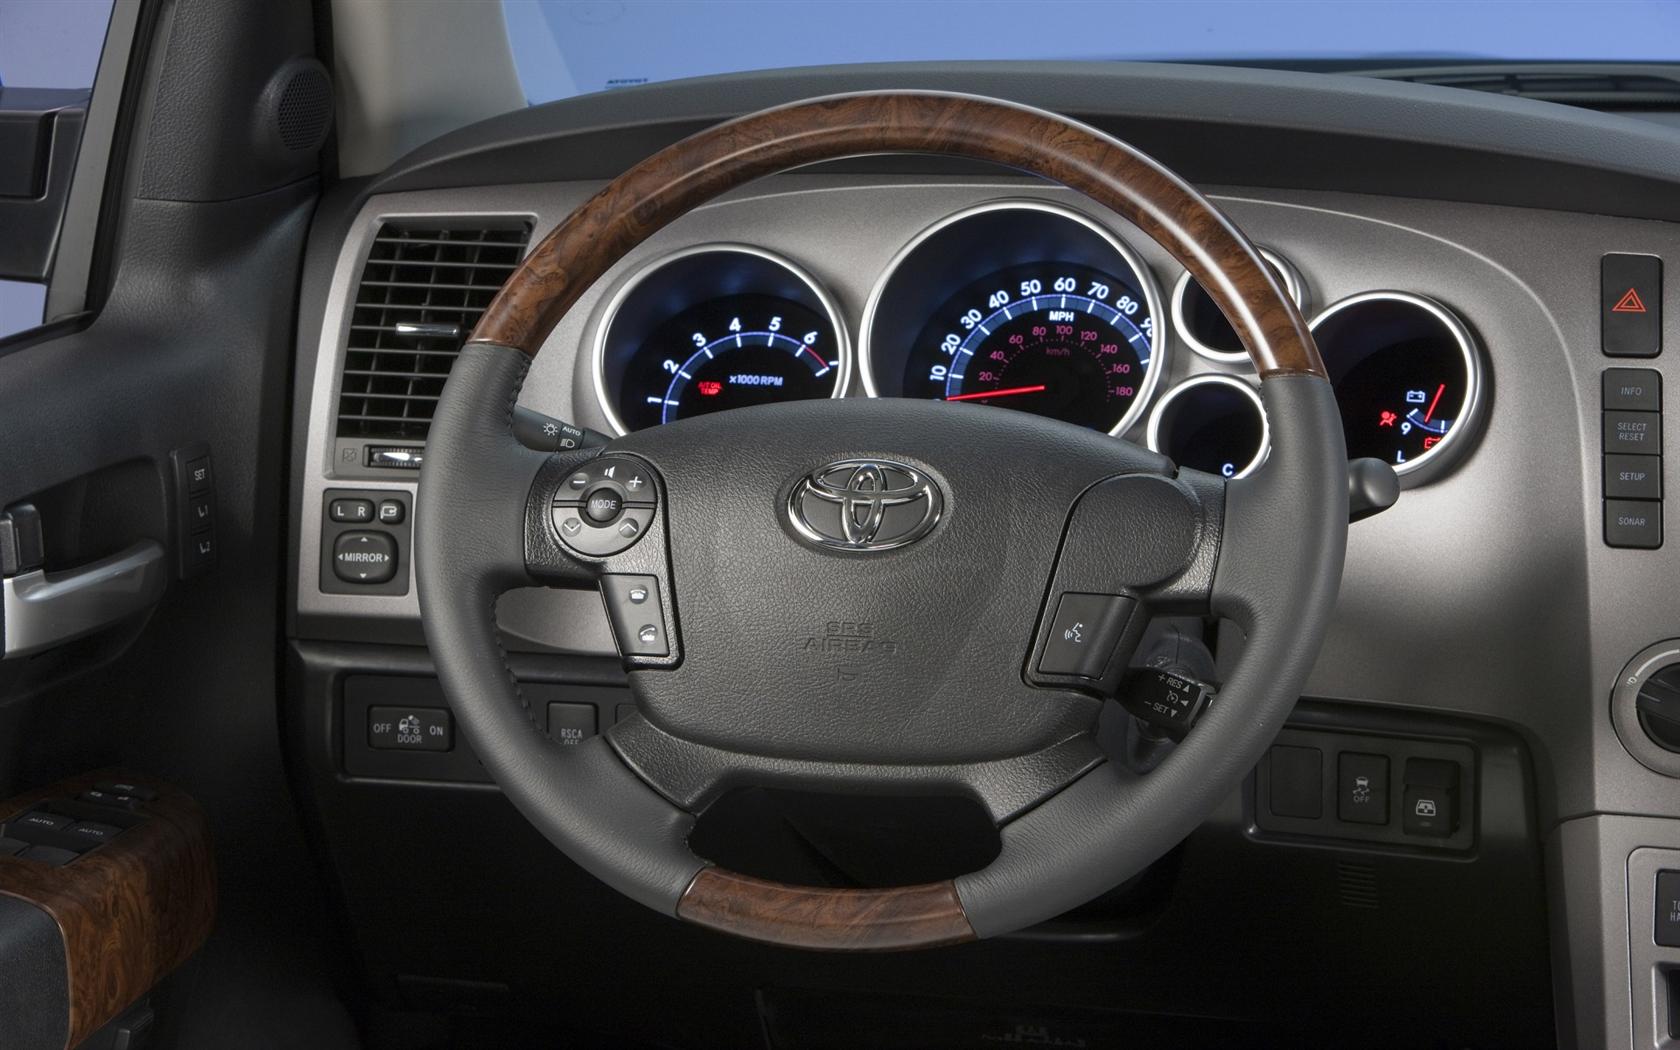 2011 Toyota Tundra